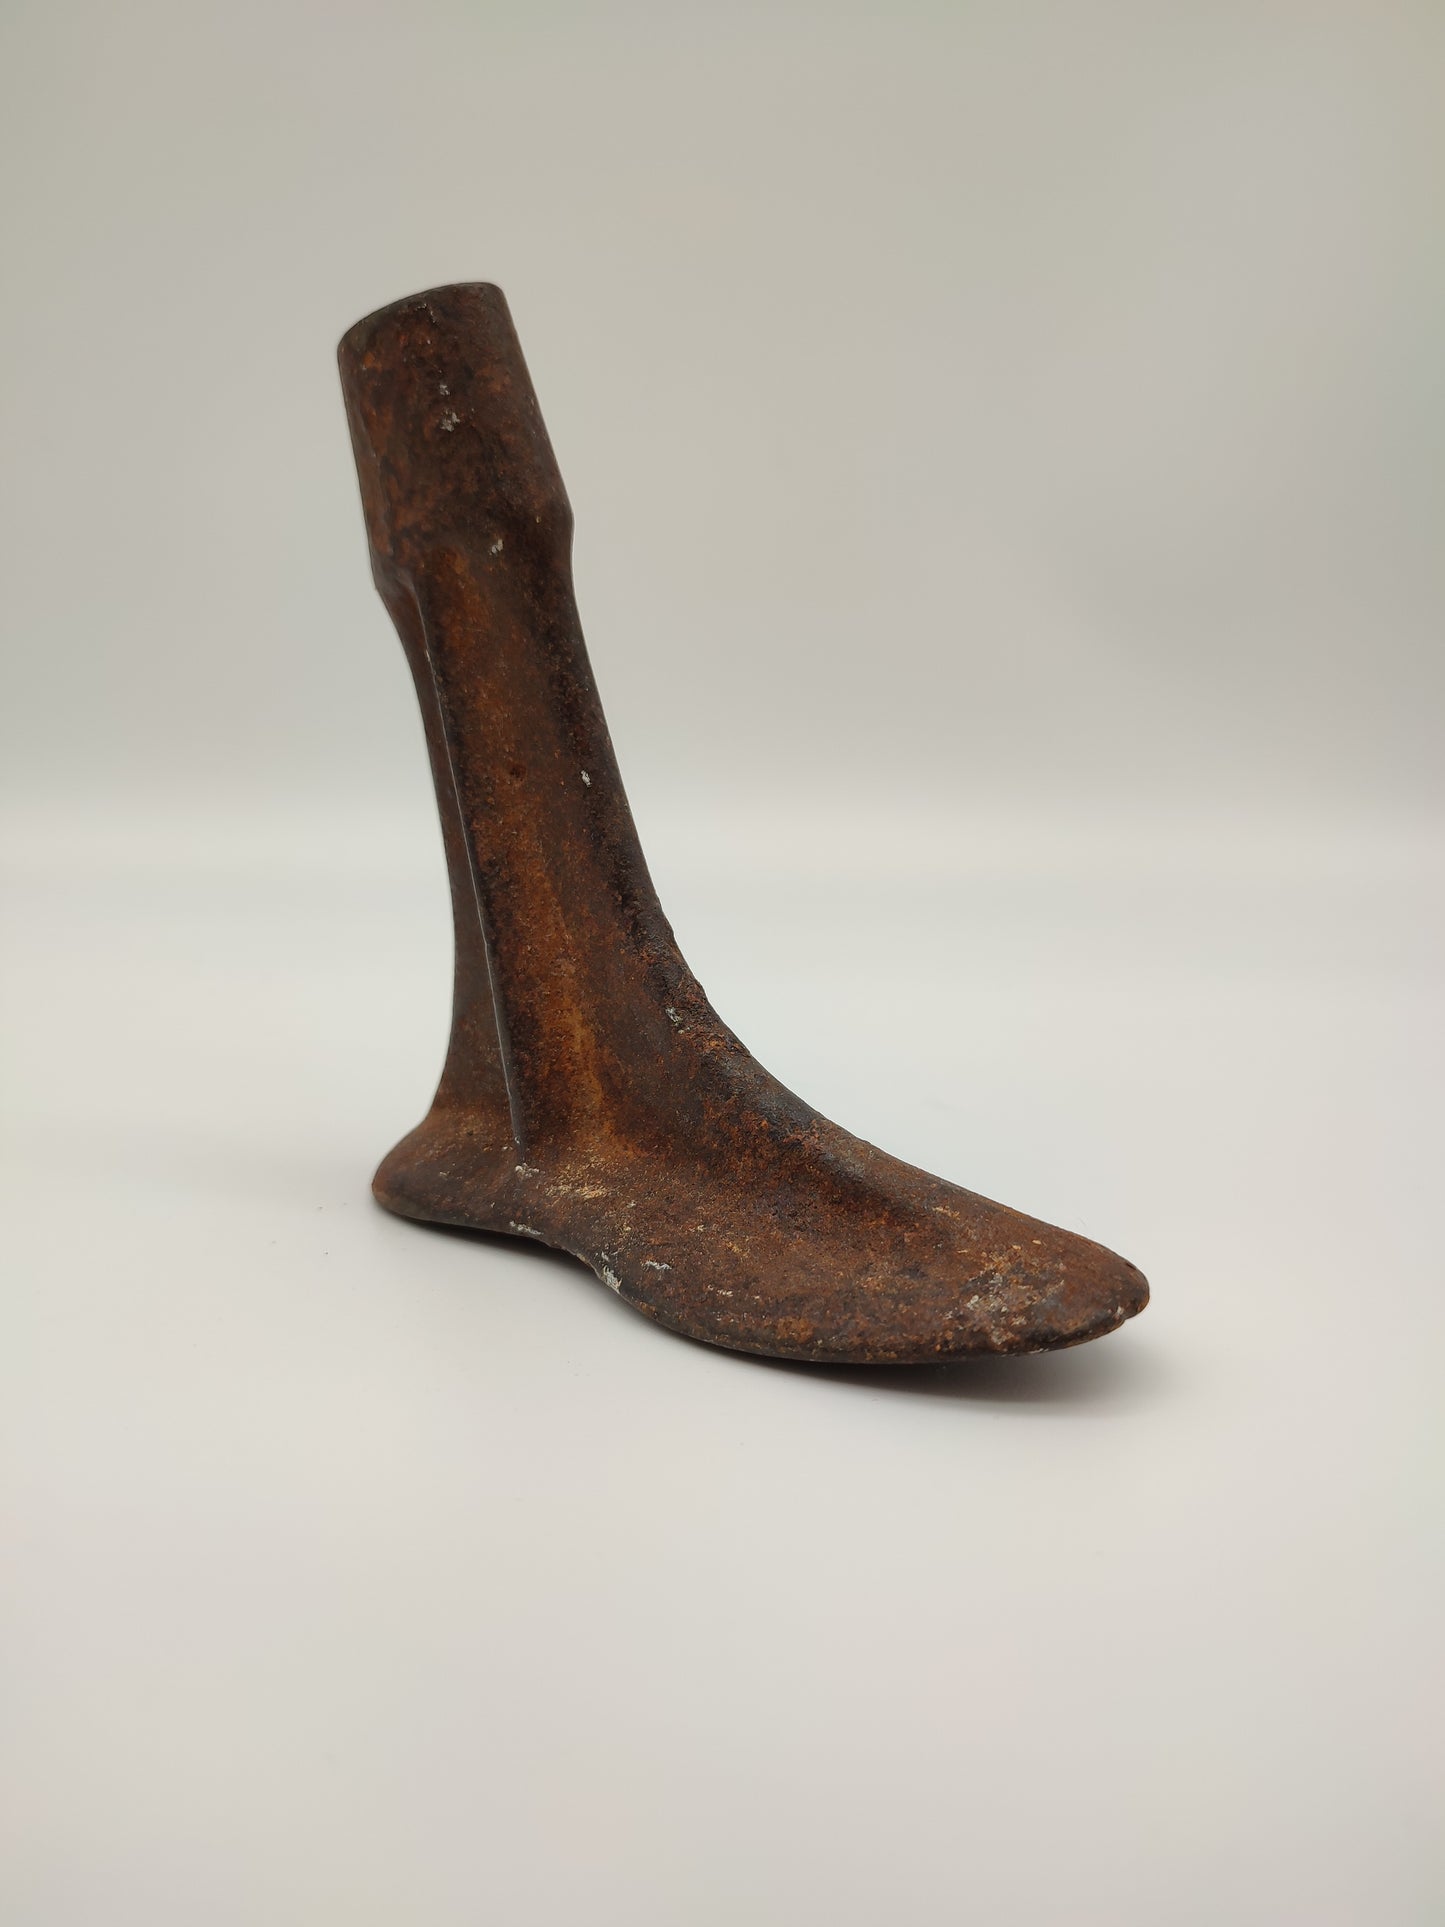 60023 Antico forma scarpe in ferro